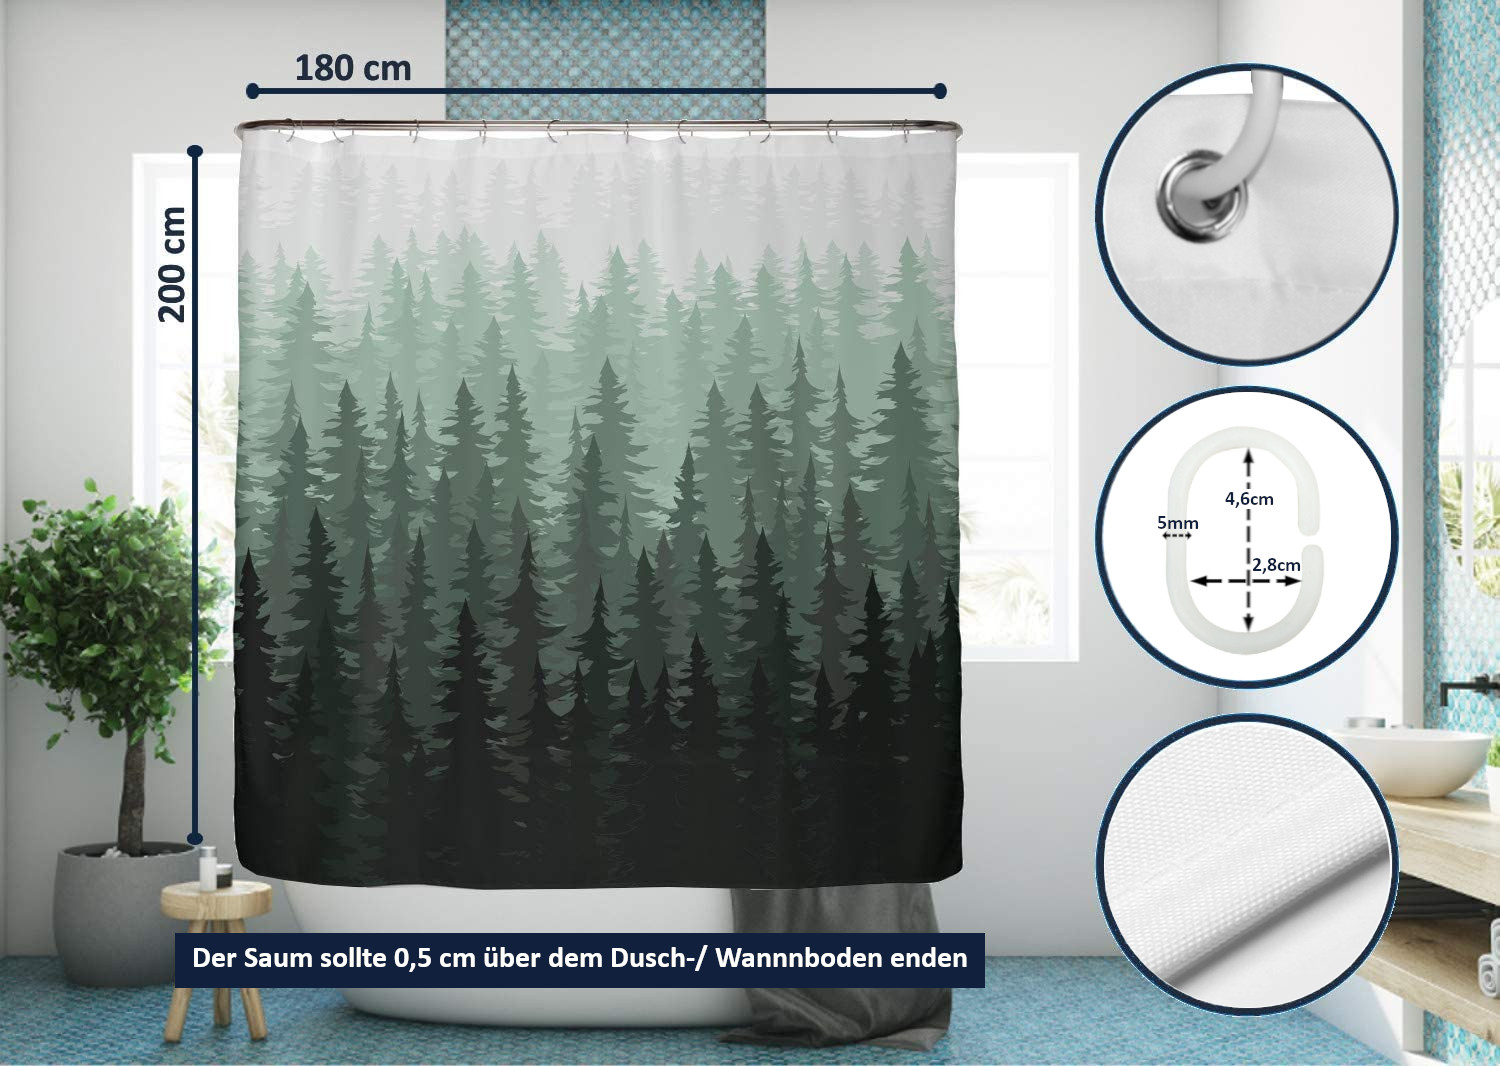 12 verstärkte Knopflöcher mDesign Duschvorhang Anti-Schimmel Duschvorhang wasserabweisend grüner Dusch- & Badewannenvorhang 180 cm x 200 cm